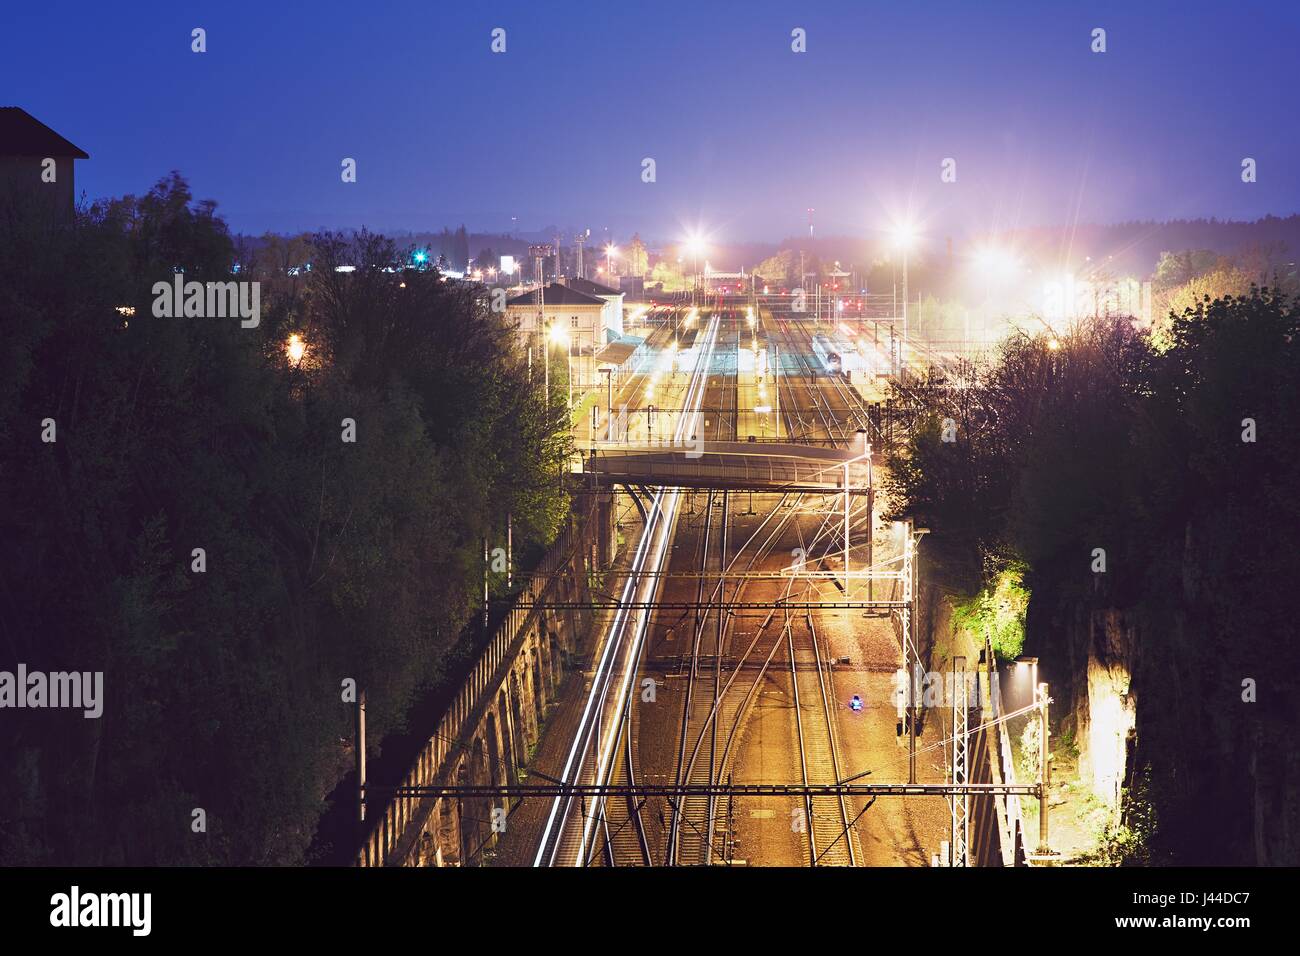 Lumières de la gare de train express de nuit. Chocen, République Tchèque Banque D'Images